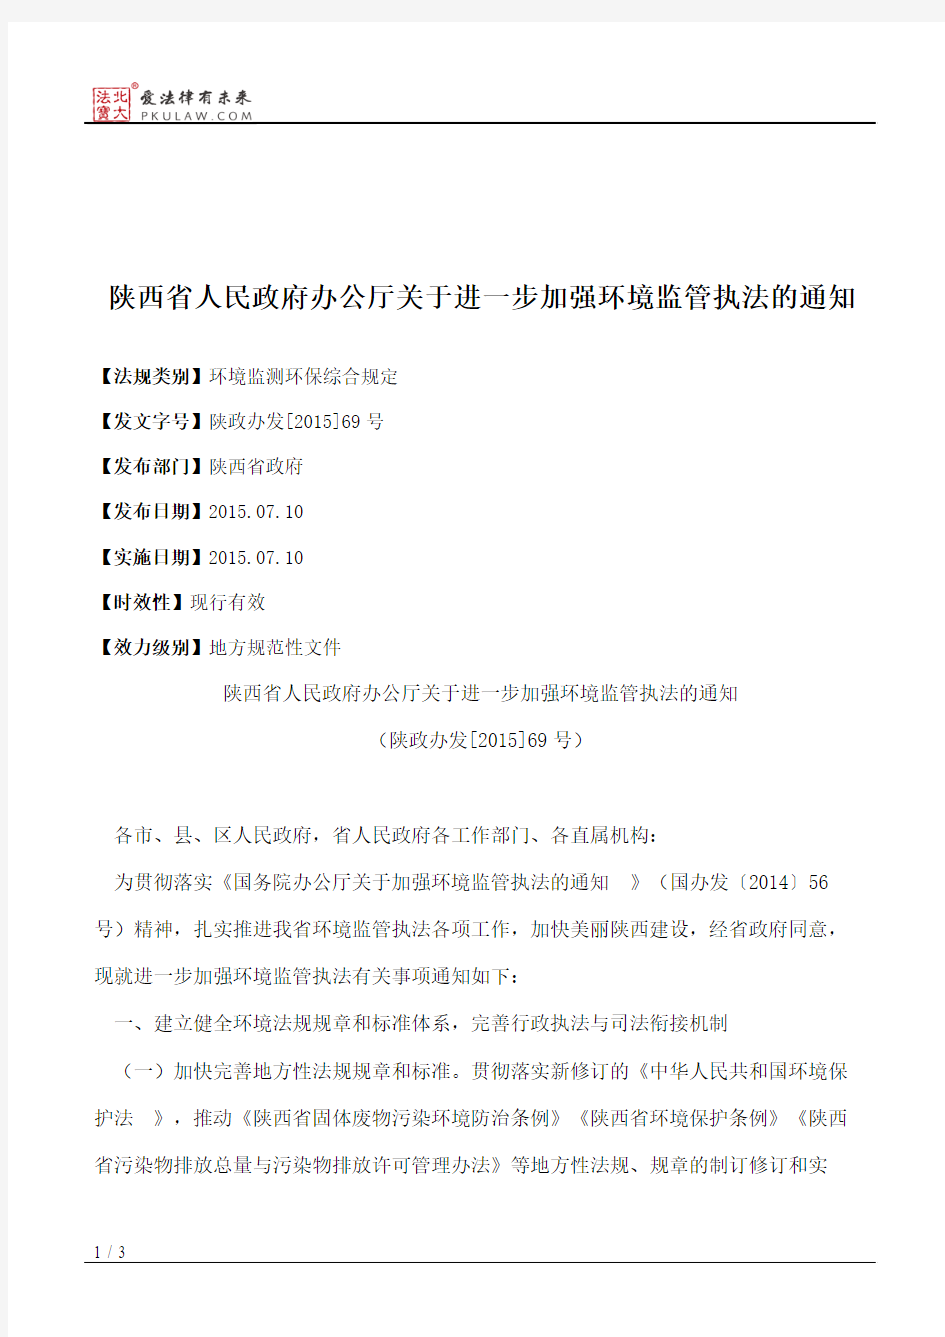 陕西省人民政府办公厅关于进一步加强环境监管执法的通知